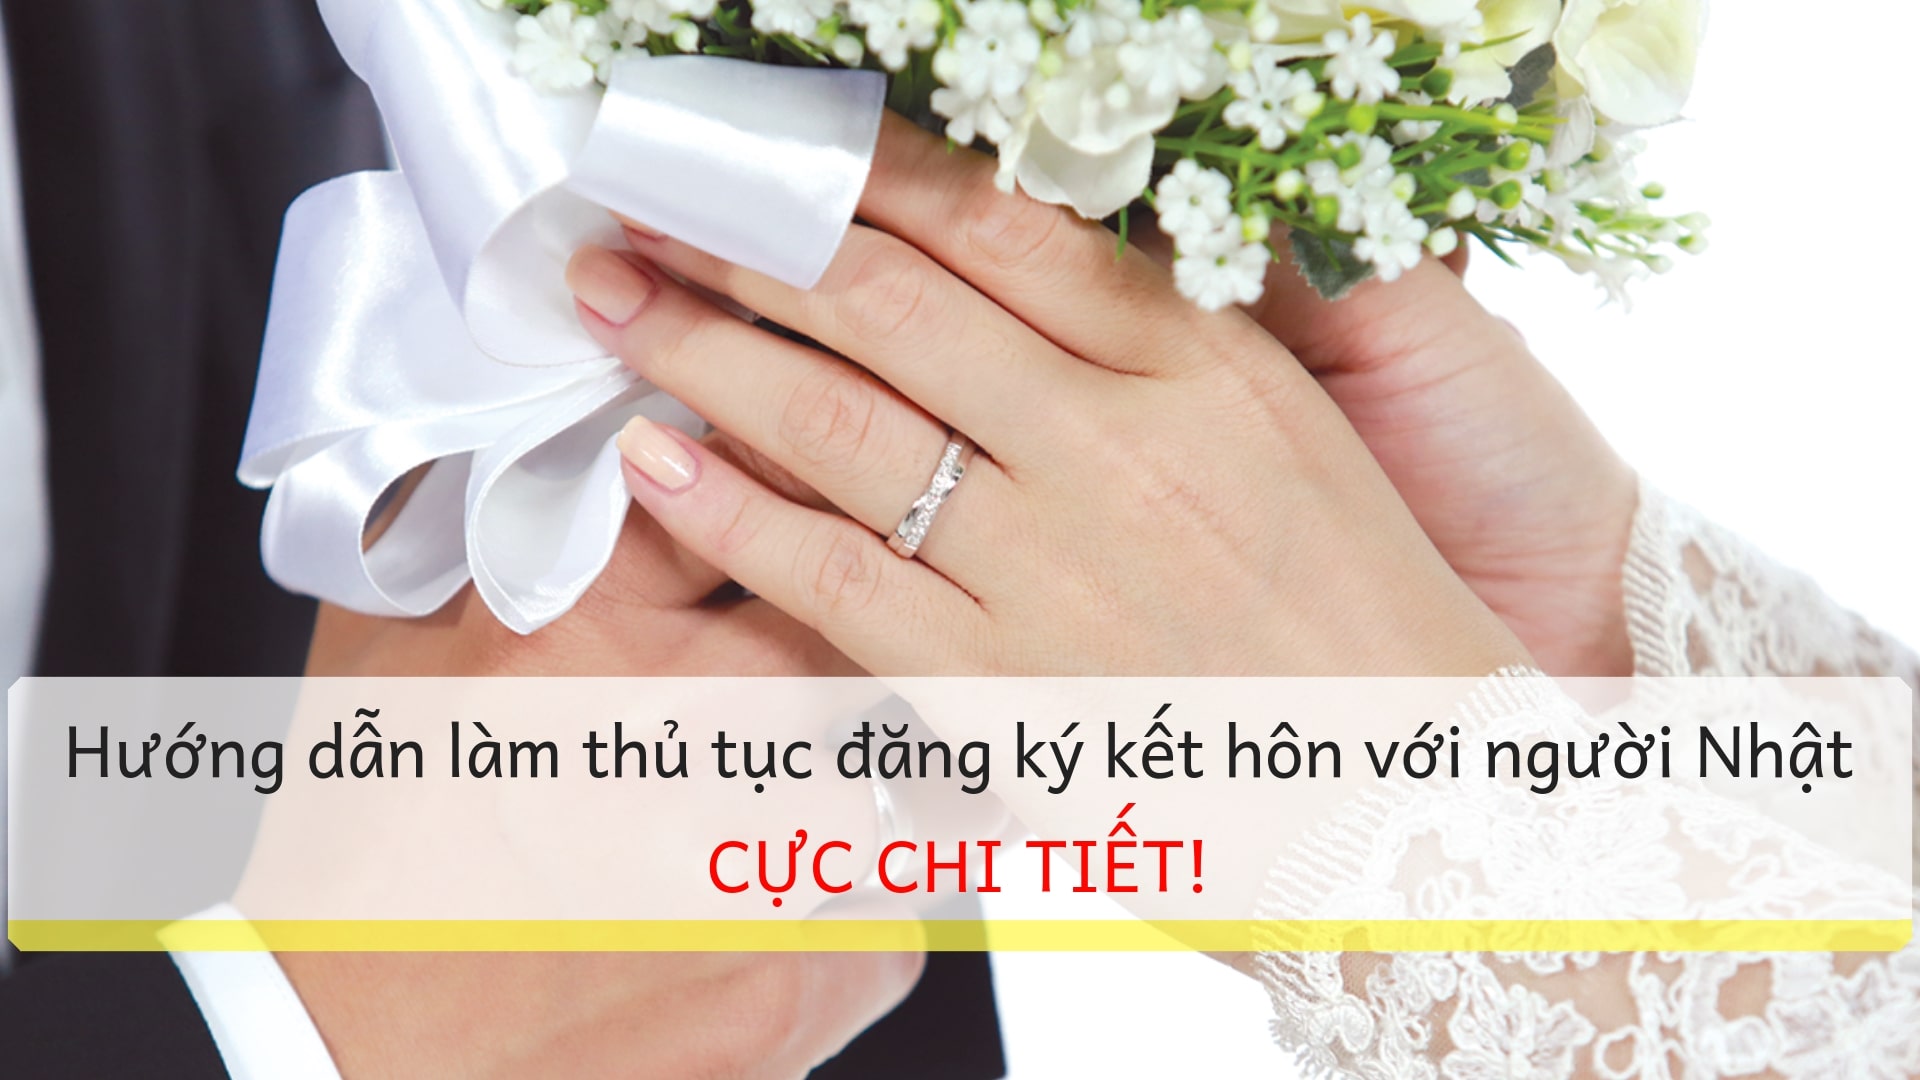 Hướng dẫn làm thủ tục đăng ký kết hôn với người Nhật CỰC CHI TIẾT!